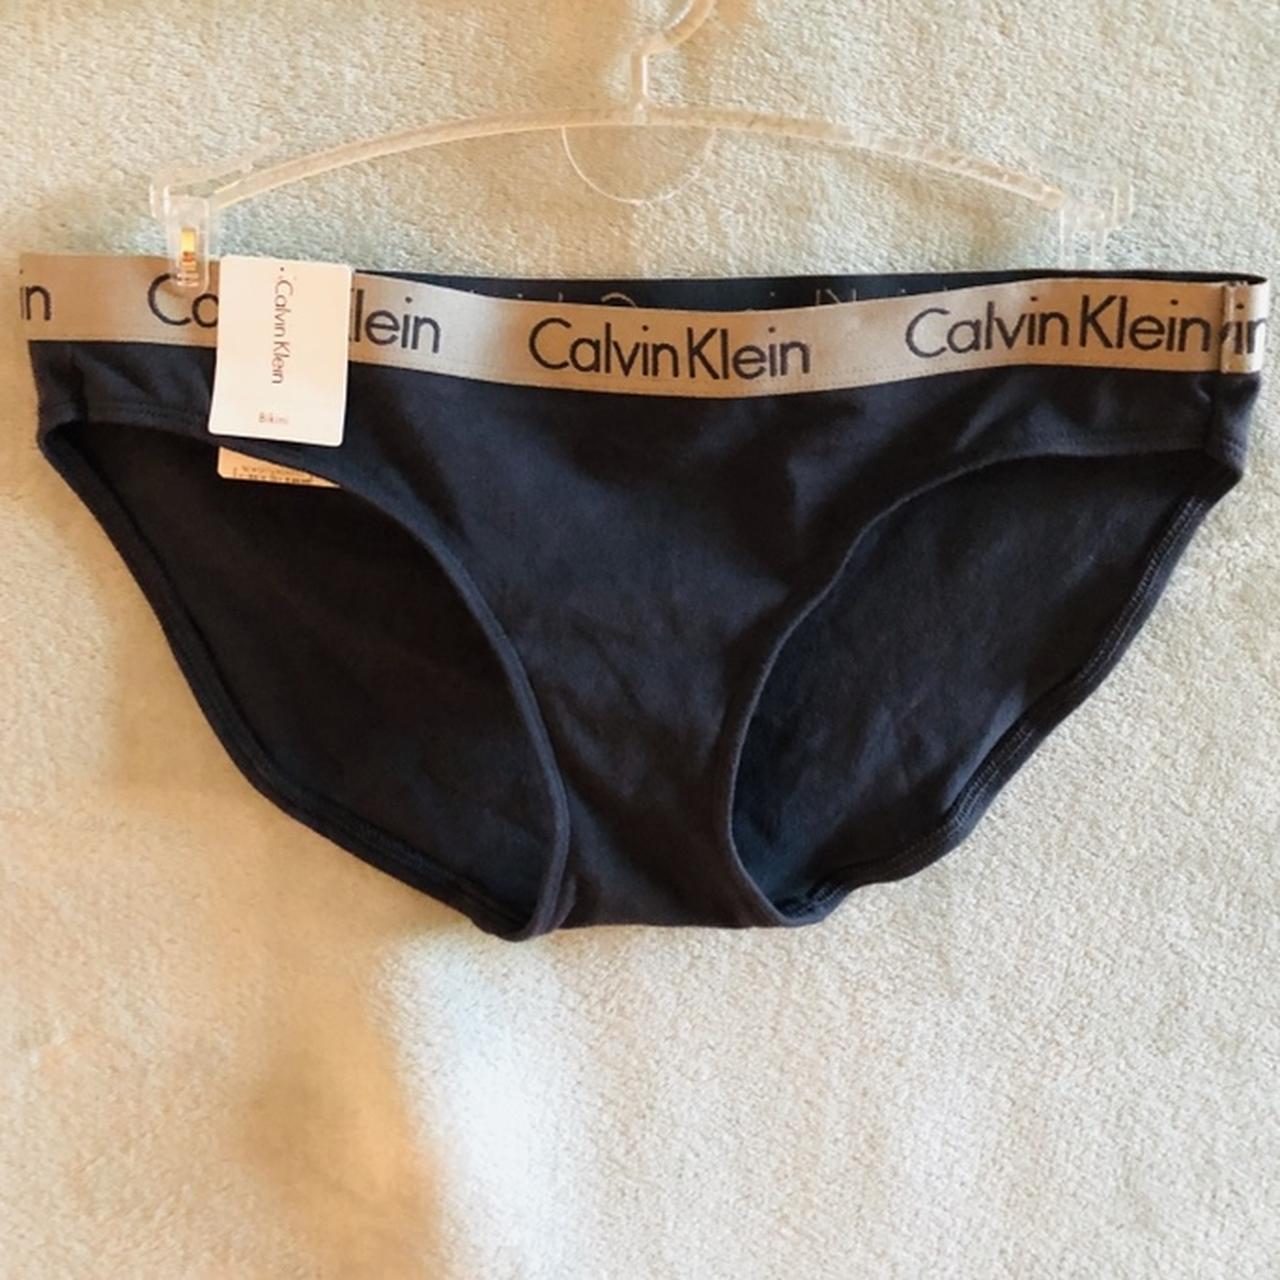 Brand new bikini style calvin klein underwear - Depop